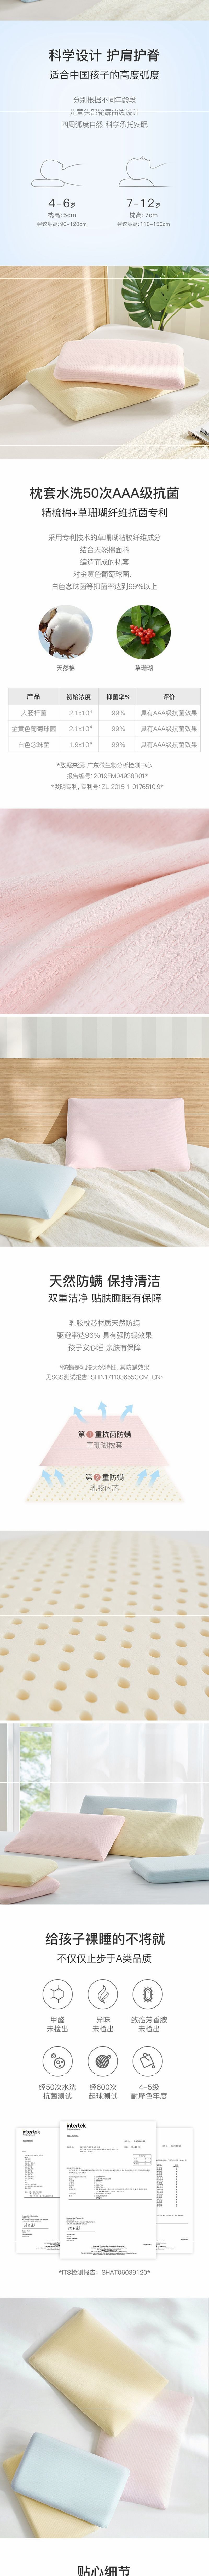 网易严选 儿童天然乳胶面包枕 (泰国进口纯乳胶) 粉色-小童款(30x50cm)